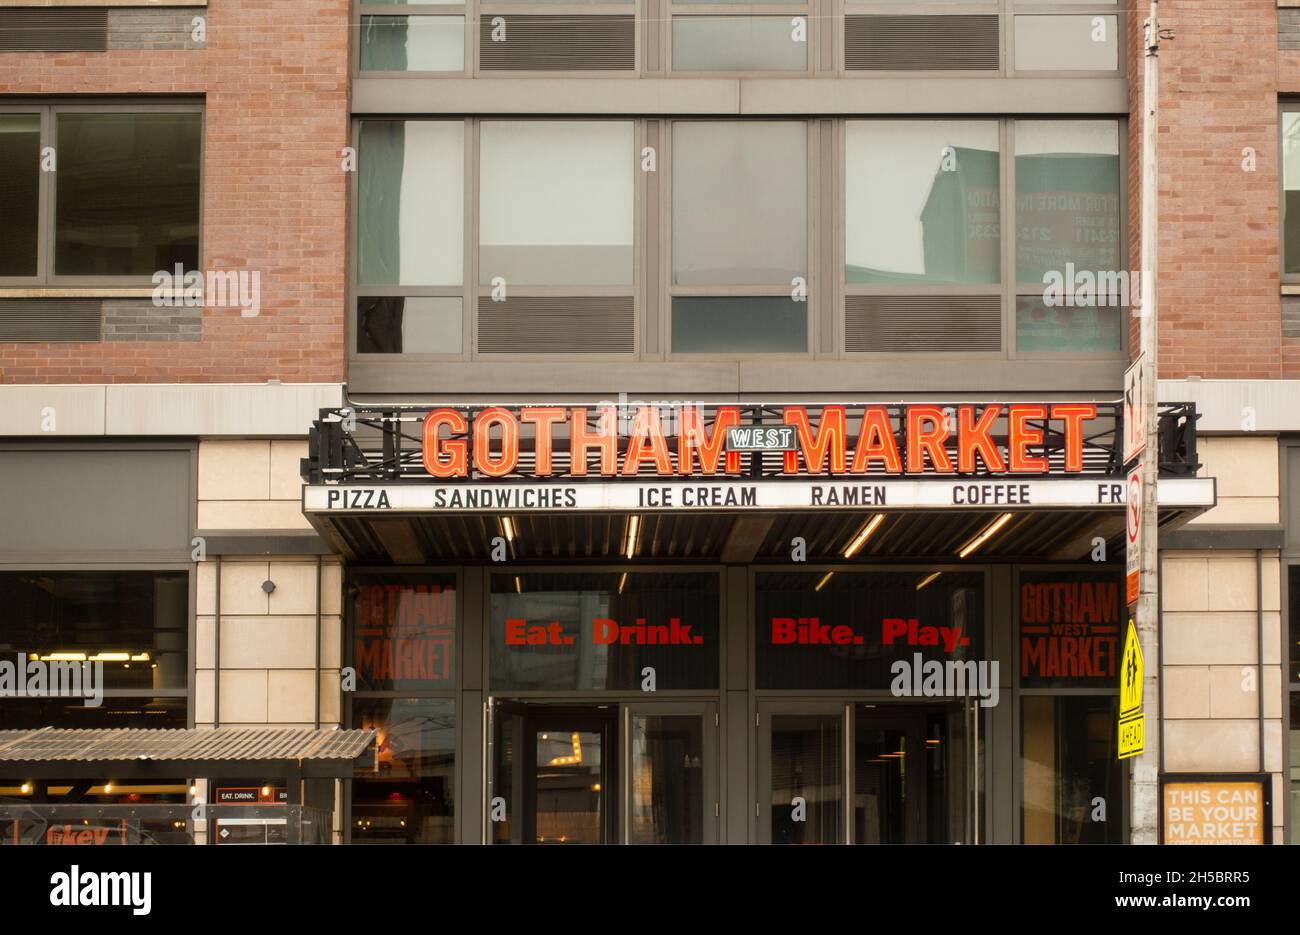 Gotham West Market Food Hall westlich von Manhattan NYC Stockfoto